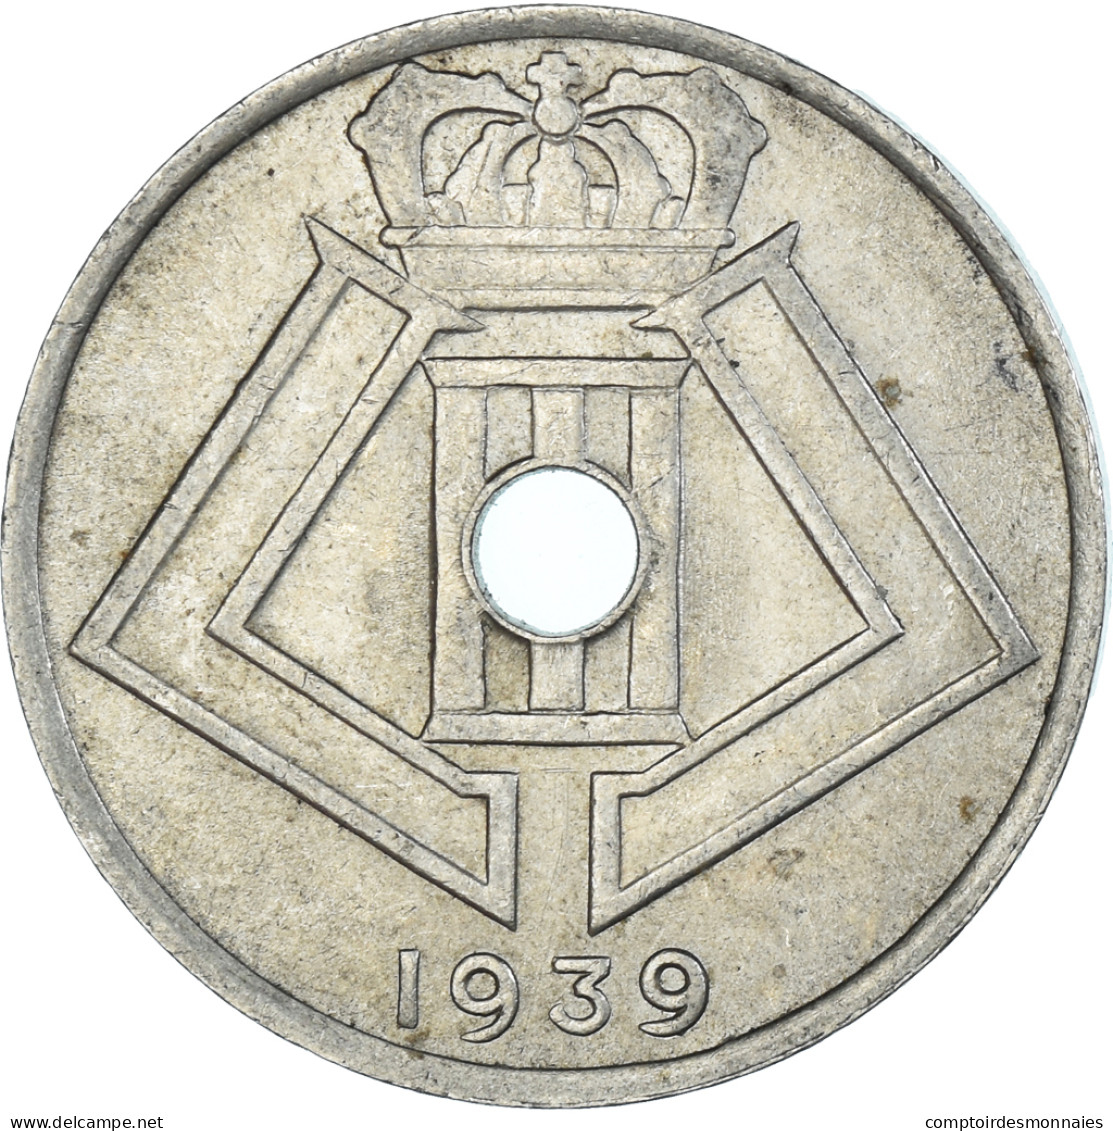 Monnaie, Belgique, 25 Centimes, 1939 - 25 Centimos